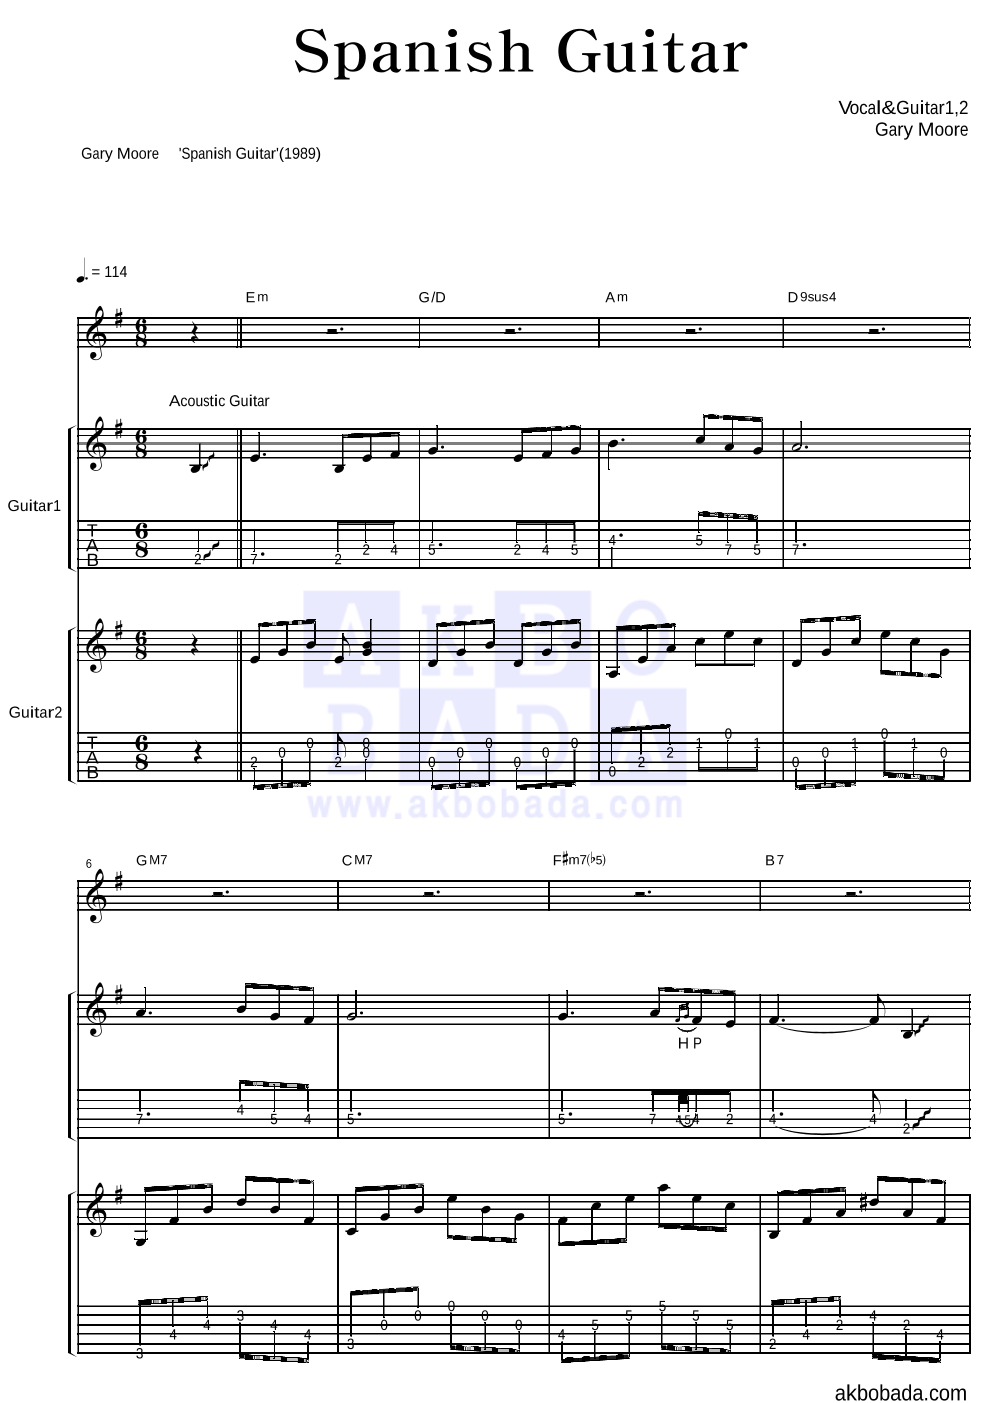 Gary Moore - Spanish Guitar 기타1,2 악보 